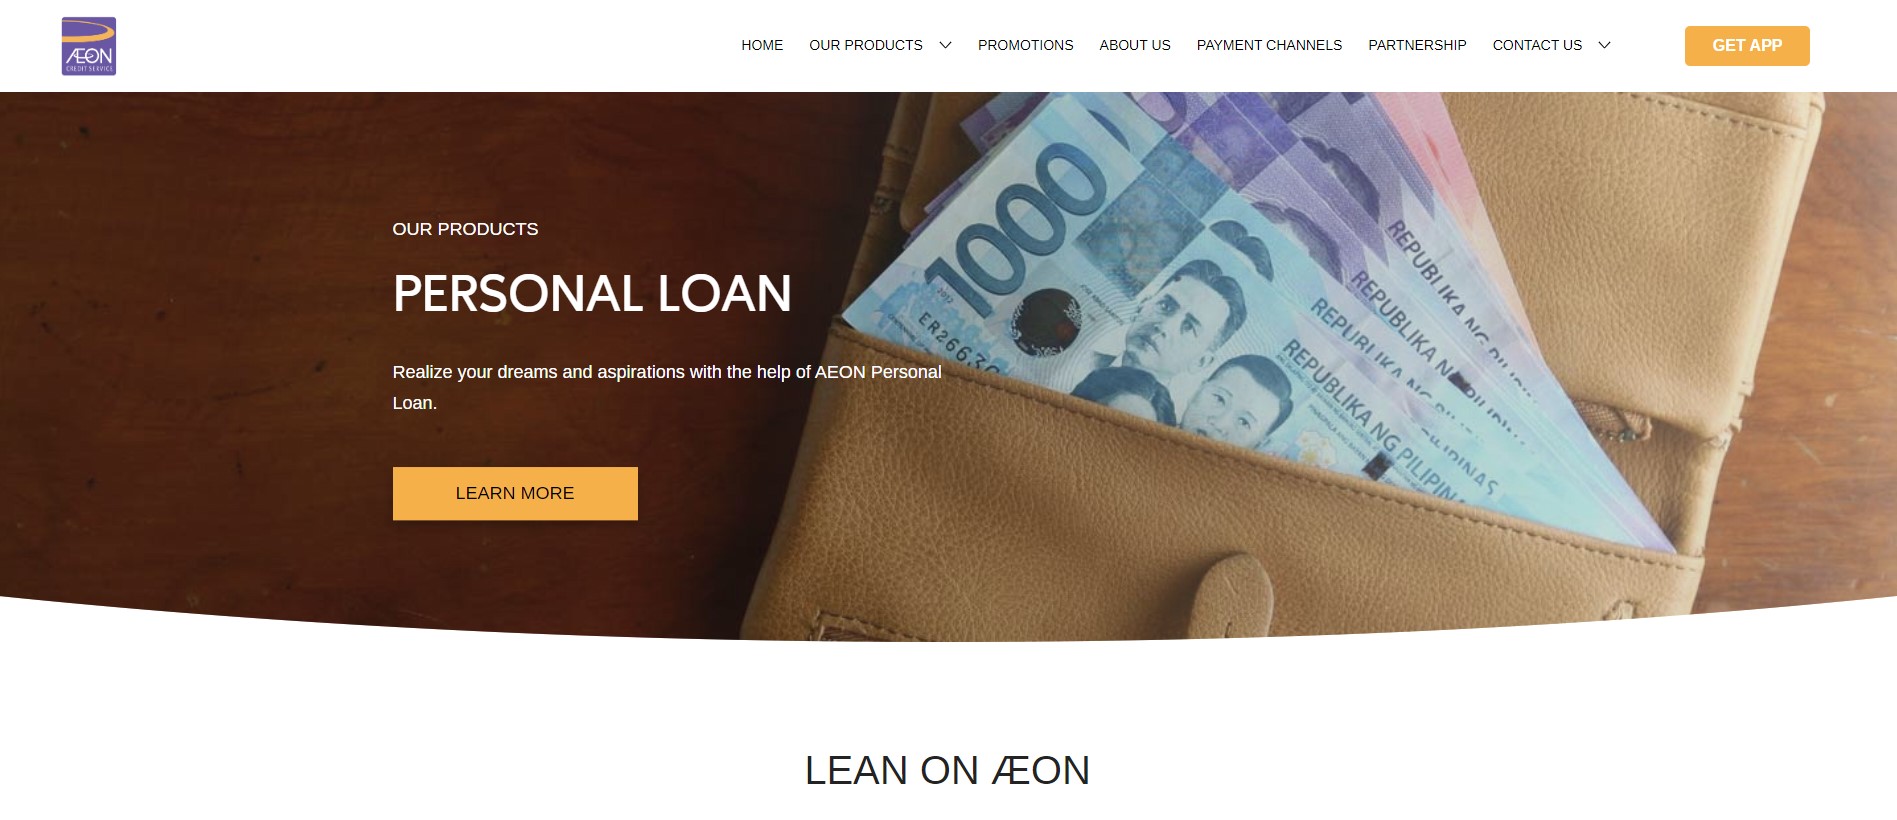 legit online loan - AEON